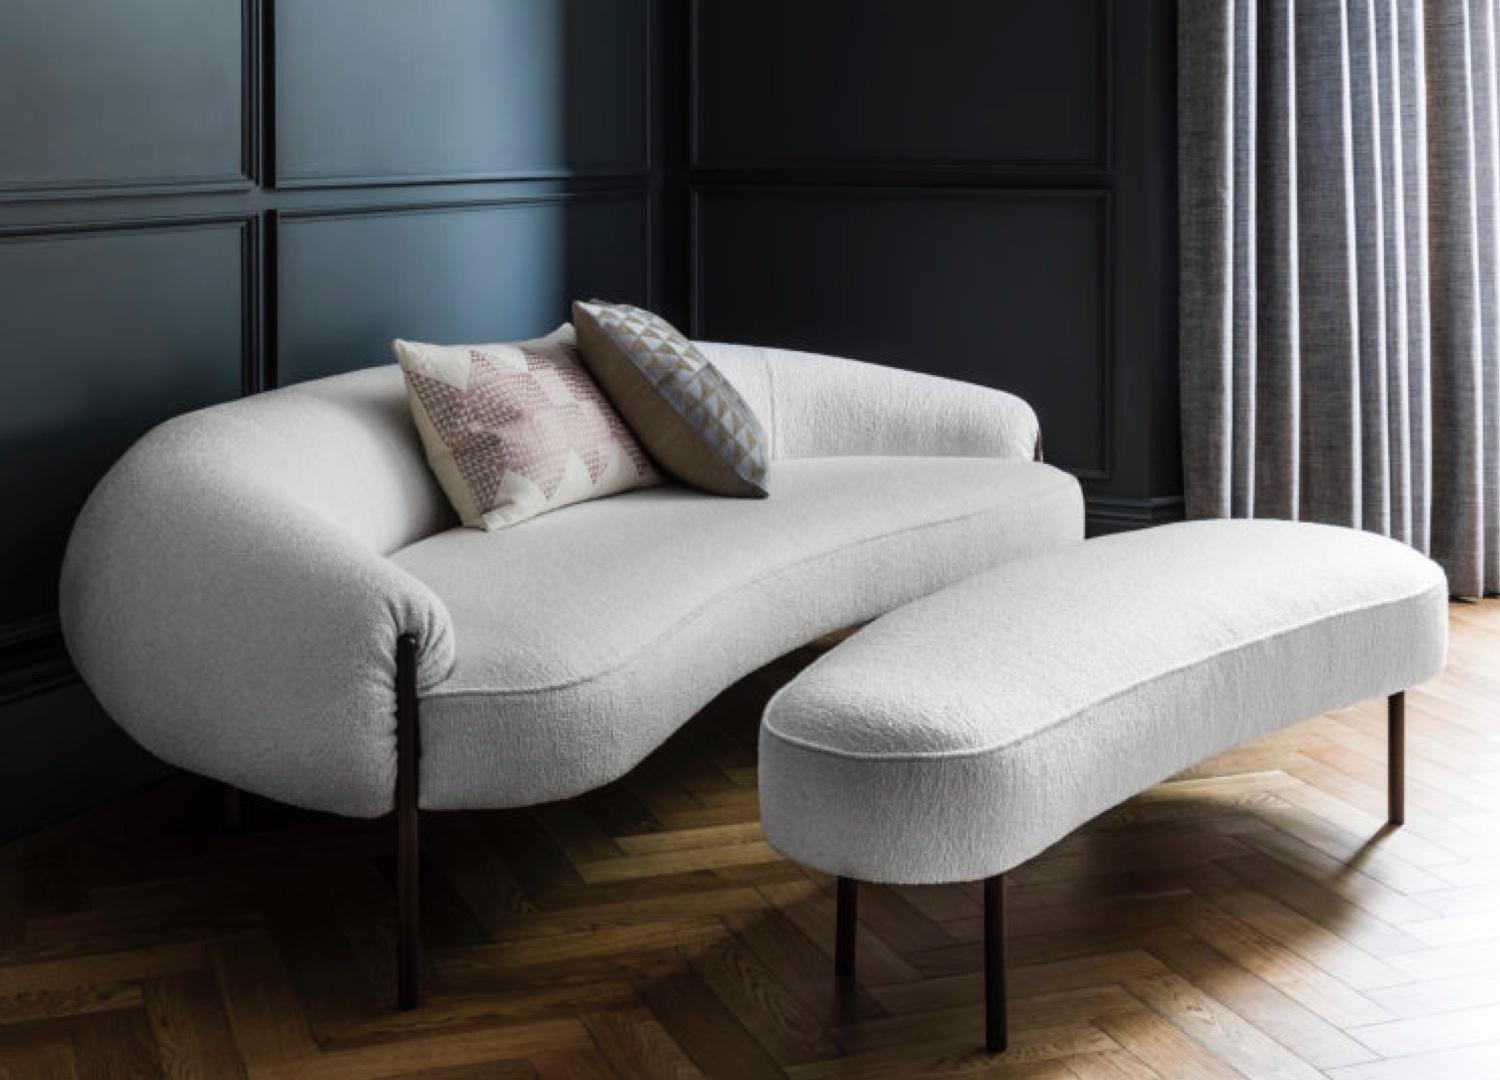 Zeitgenössisches Sofa 'Isola' von Amura Lab 
Designer: Lucy Kurrein

Abgebildetes Modell: Textil - Galba 110

Abmessungen: 
- Sofa : H. 67 x B. 220 x T. 99 cm 

